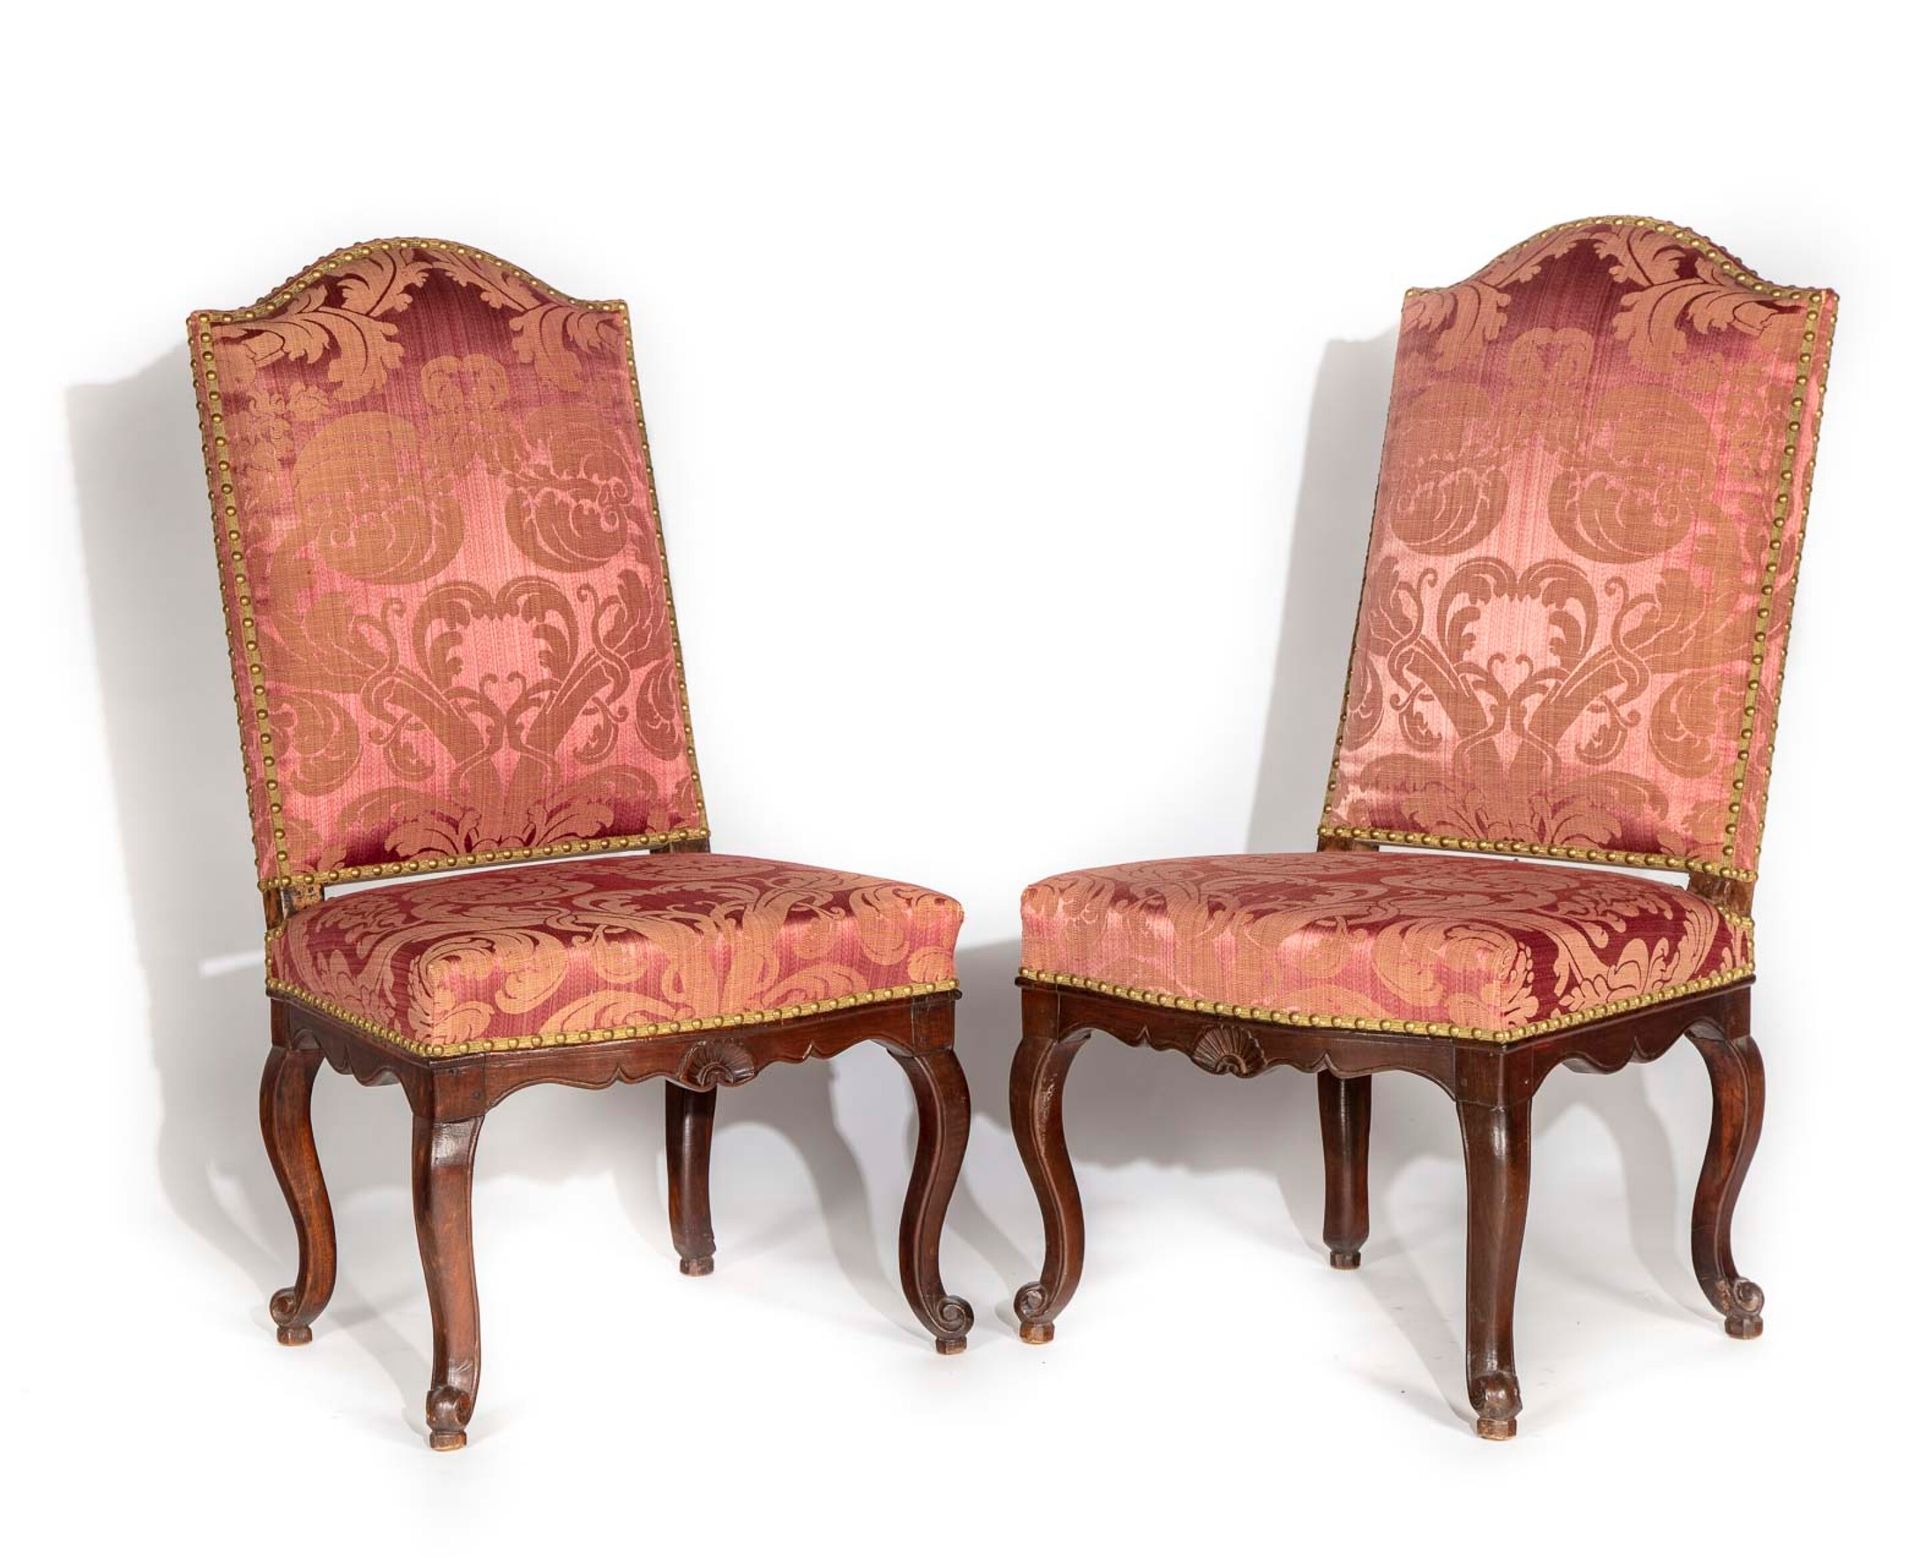 Null 一对着色的胡桃木椅子，高的软垫靠背，扇形带，靠在滚动的凸面腿上

罗纳河谷，18世纪中期

H.105厘米；长55厘米

修缮